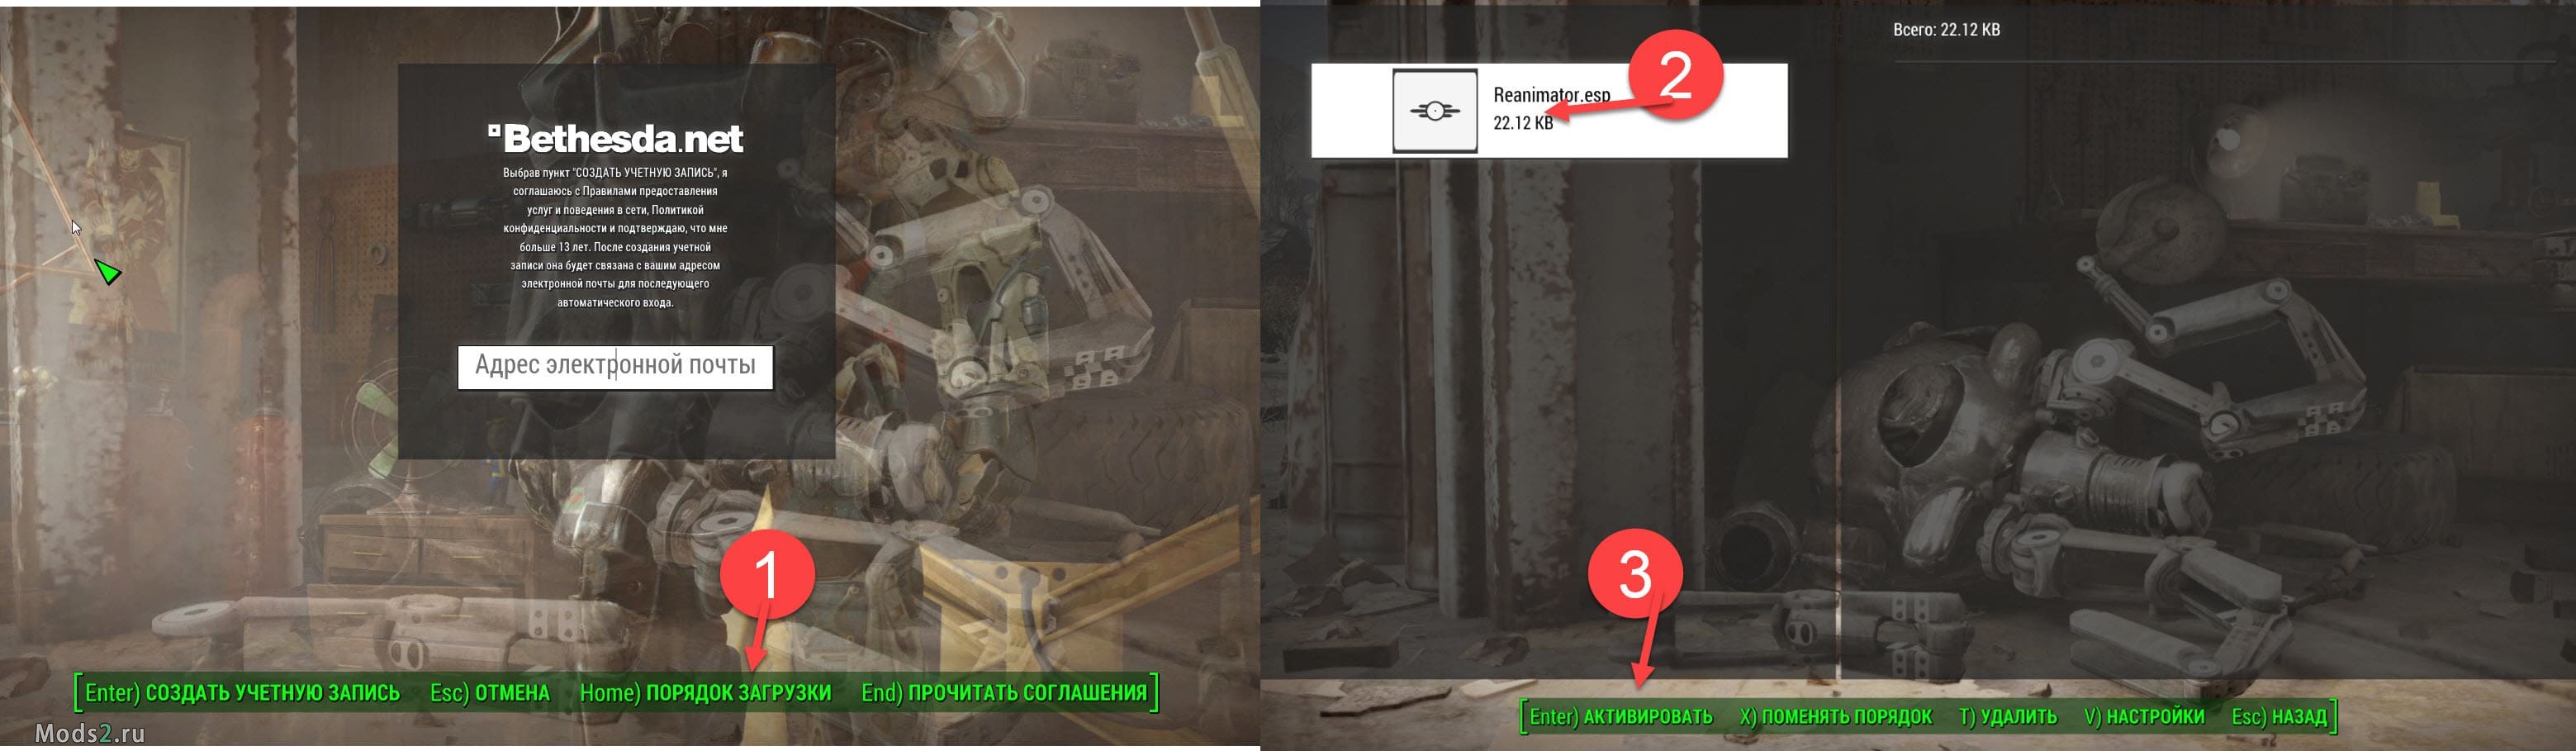 Fallout 4 установка модов esp фото 71